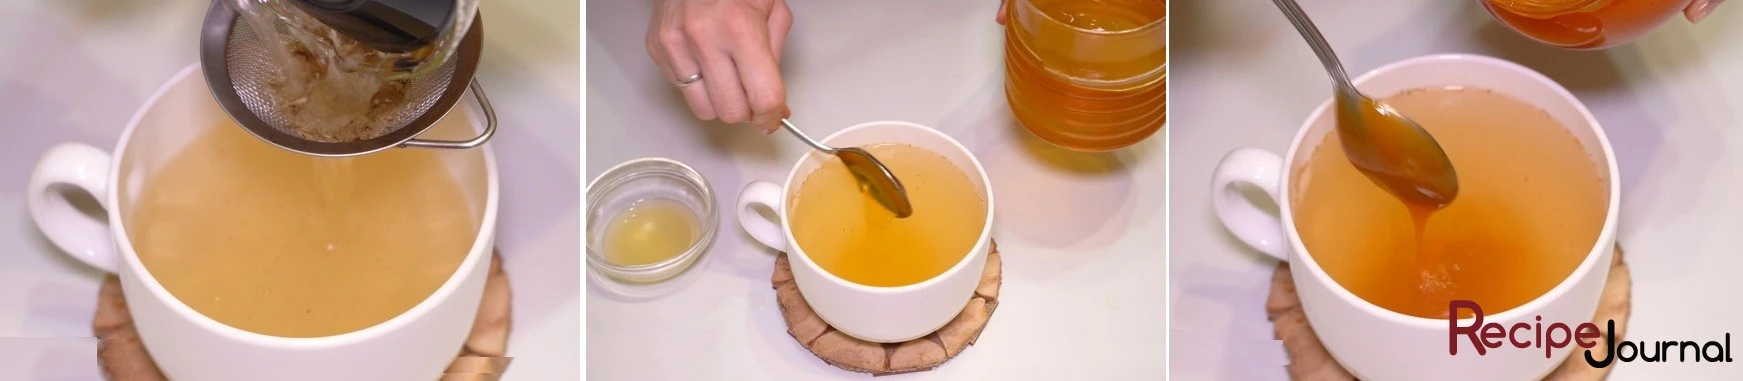 Чай настоялся, разливаем по чашками через ситечко, добавляем мед и еще лимона. Все, чай пьем мелкими глотками, что бы продлить наслаждение.